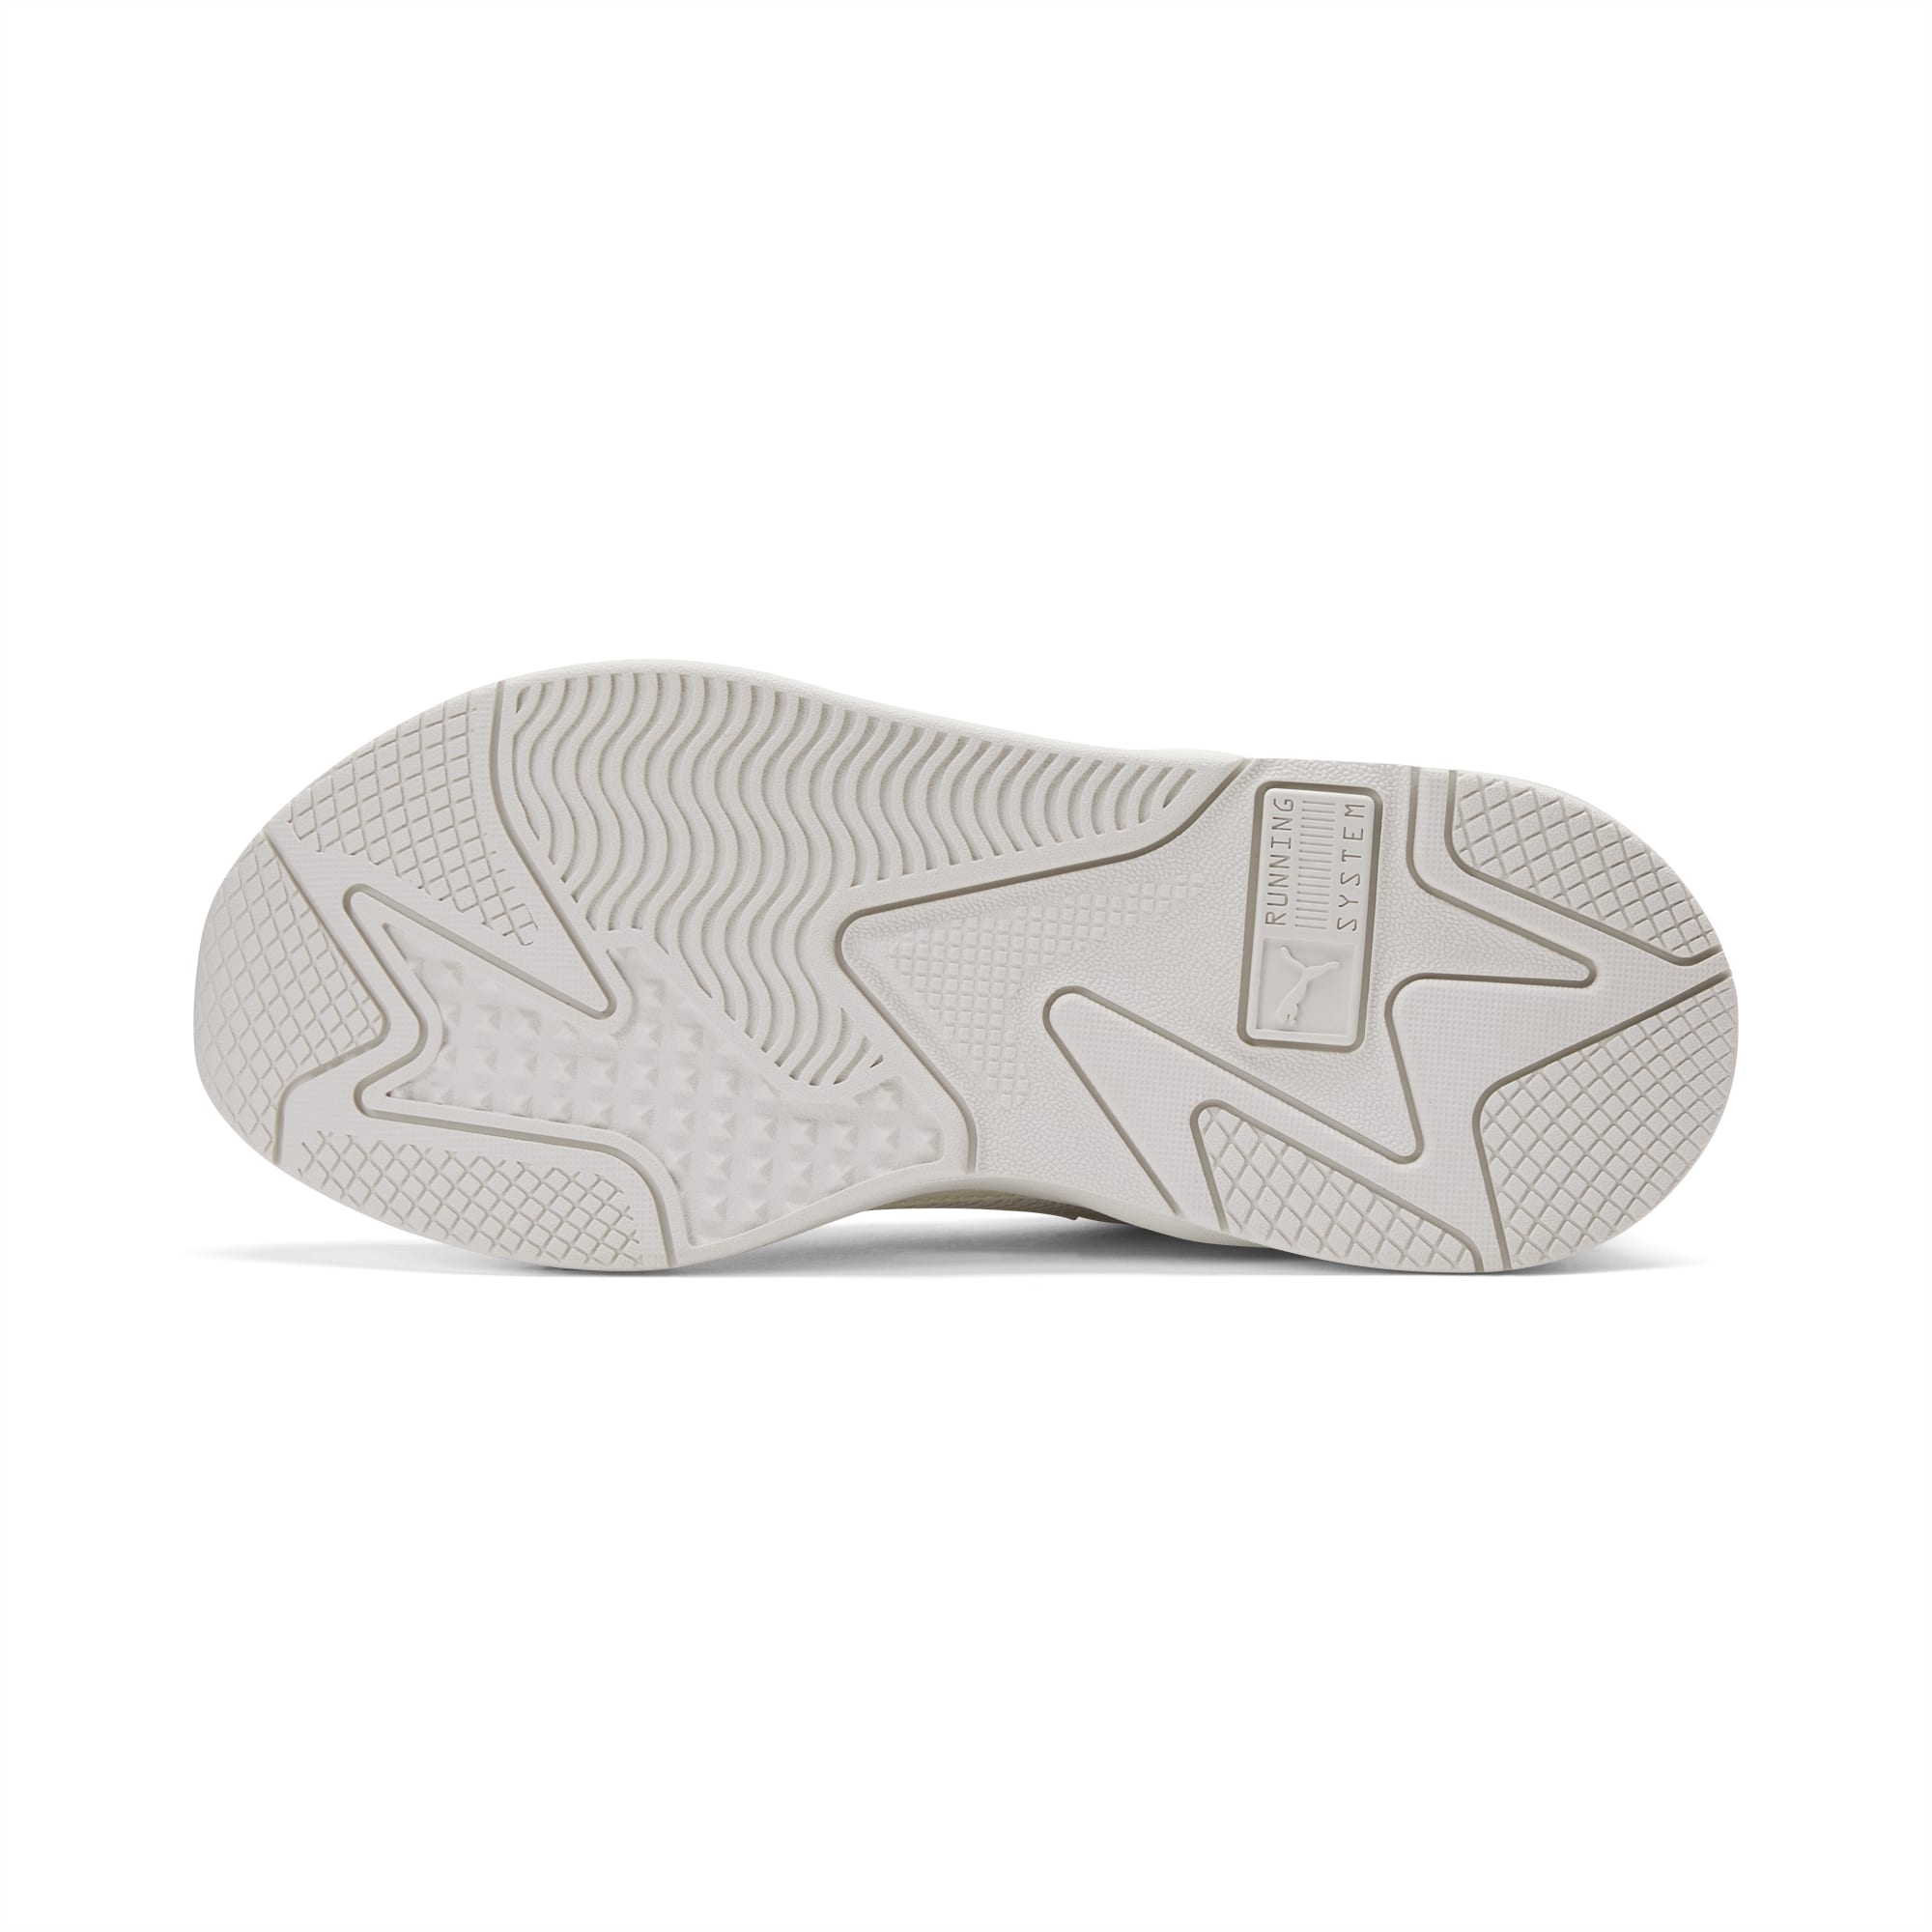 Baskets pour homme Puma RS-X Geek - Gris/Noir - 391174 03